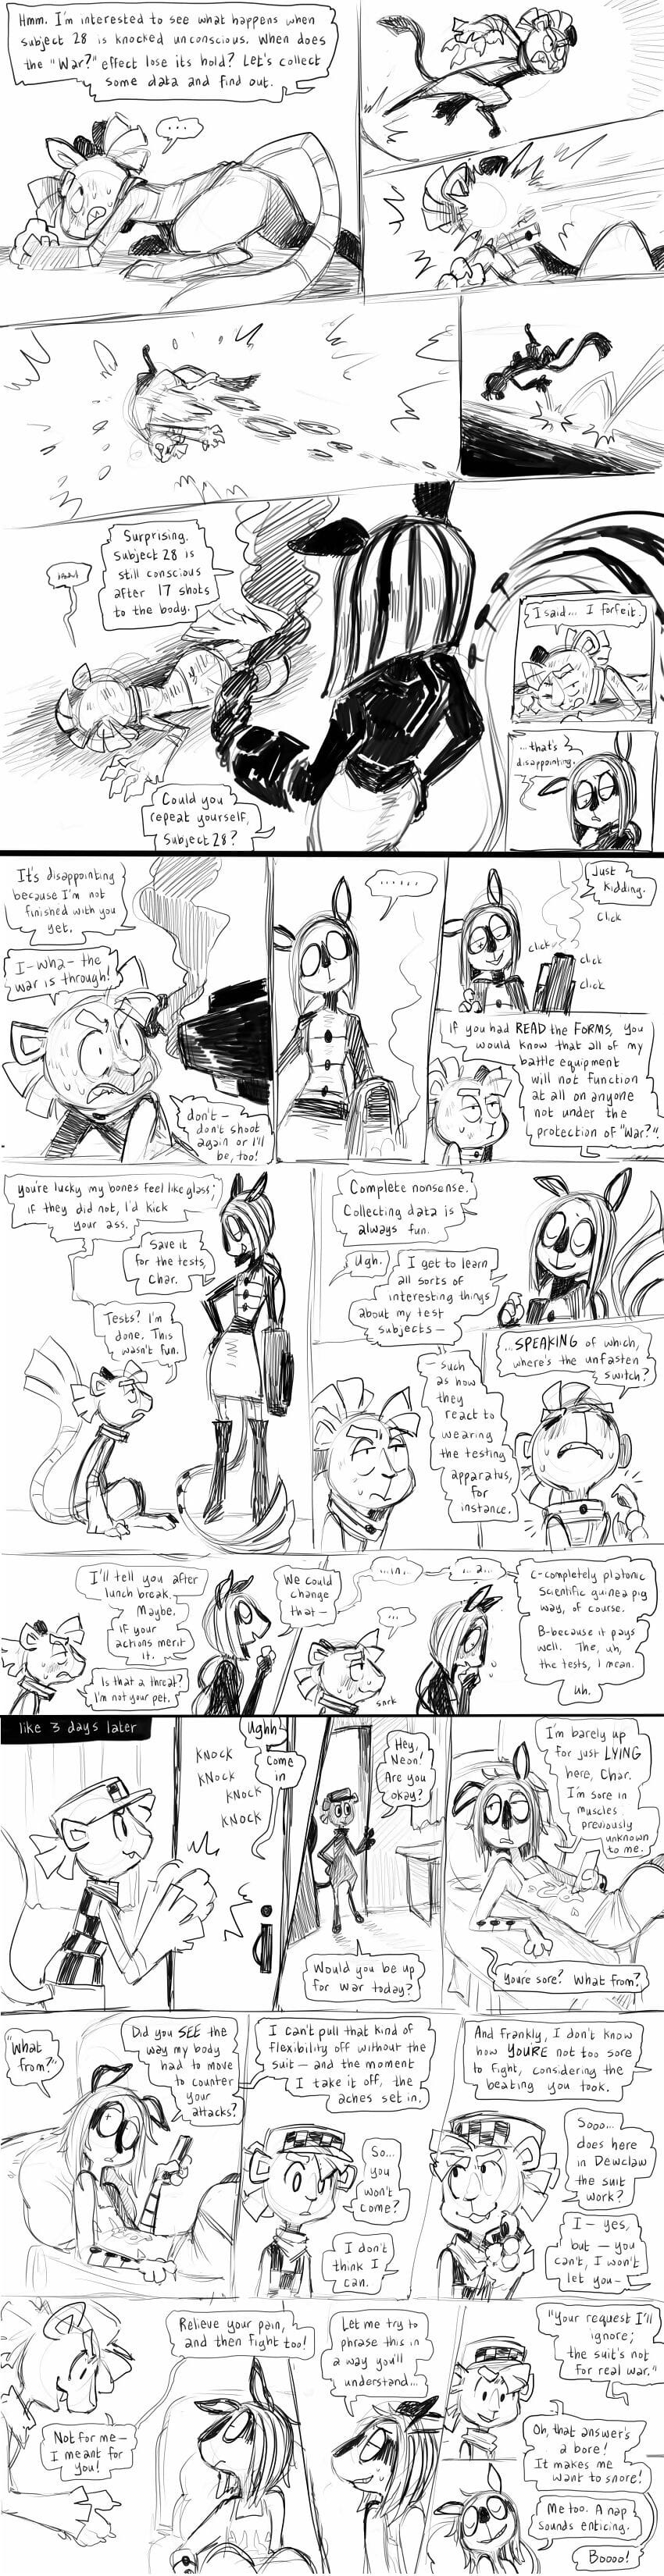 Sonstiges comics Teil 3 page 1